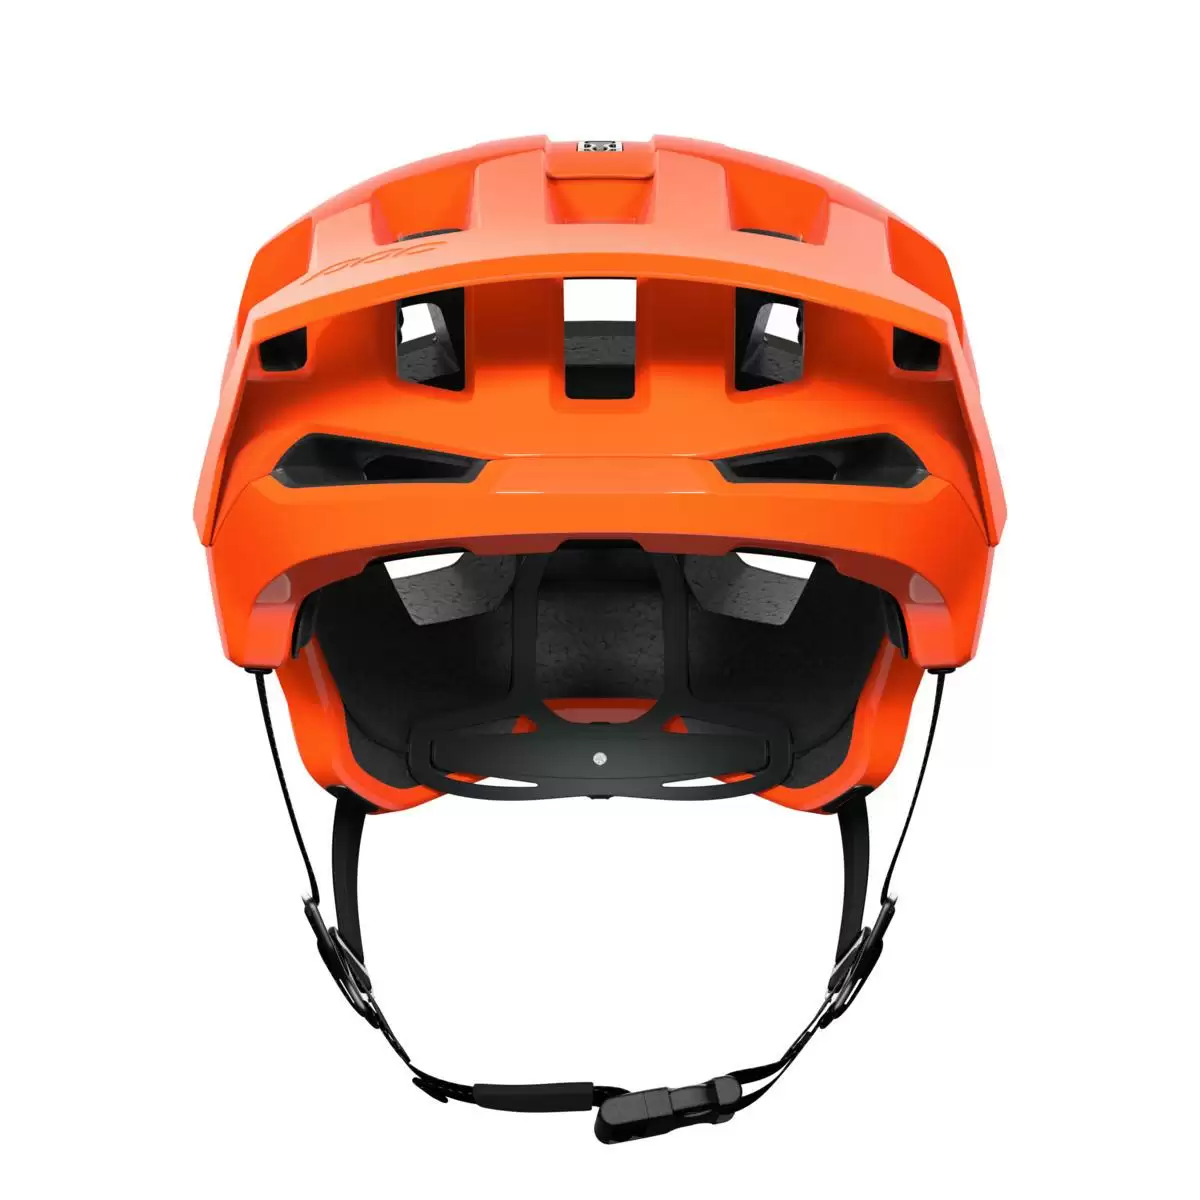 Helmet Kortal Race MIPS AVIP Fluorescent Orange size XS-S (51-54cm) #3